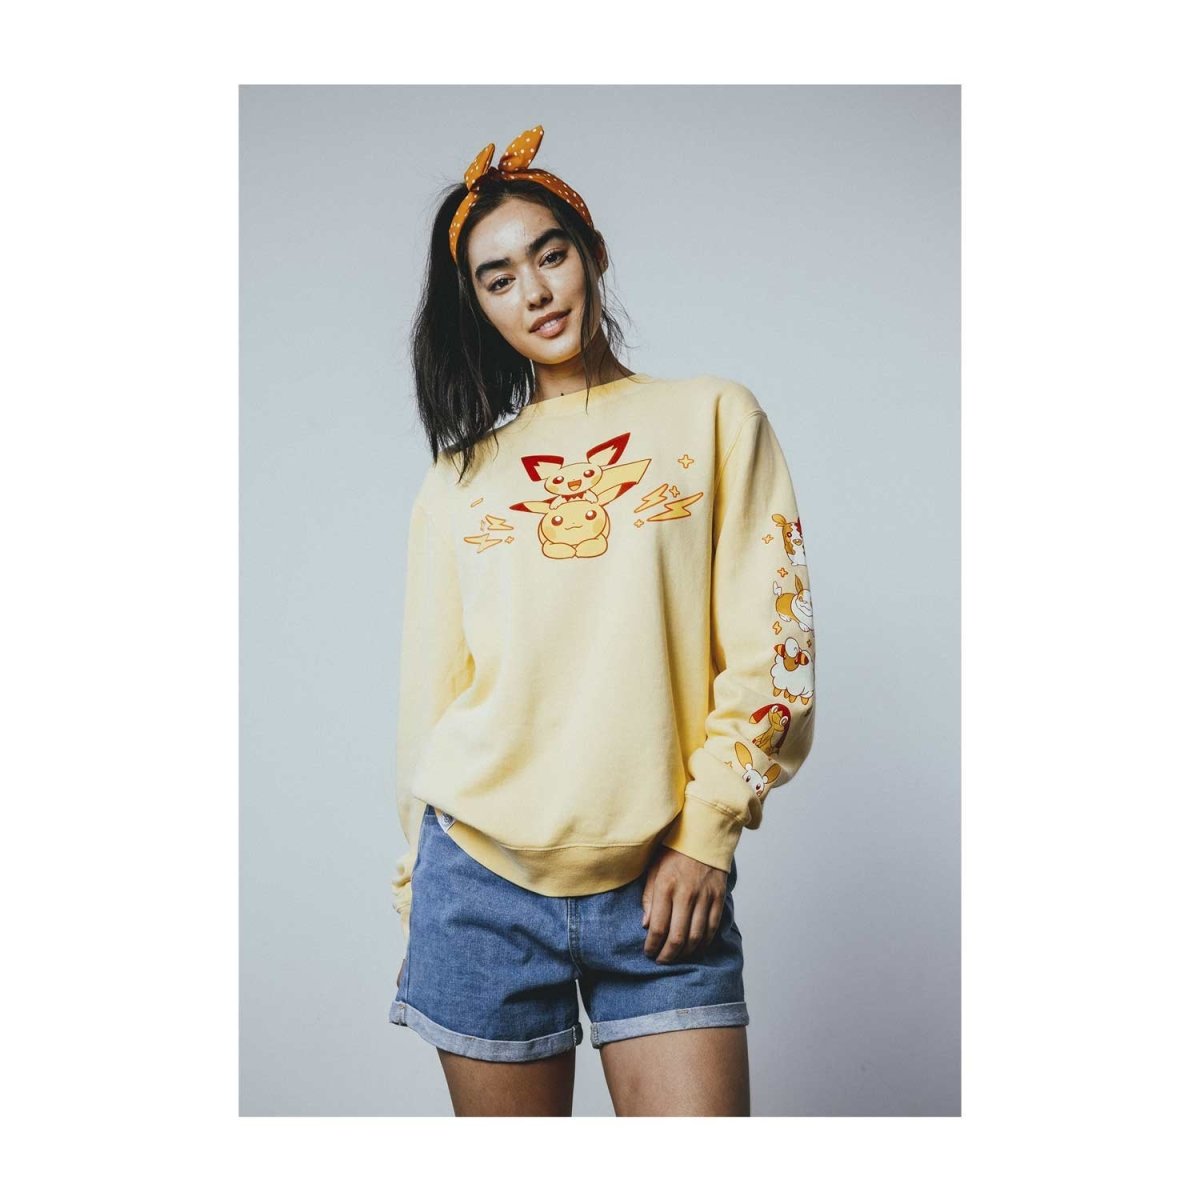 Pikachu Onesie | Cute pikachu, Cute sweatshirts, Cute girl poses